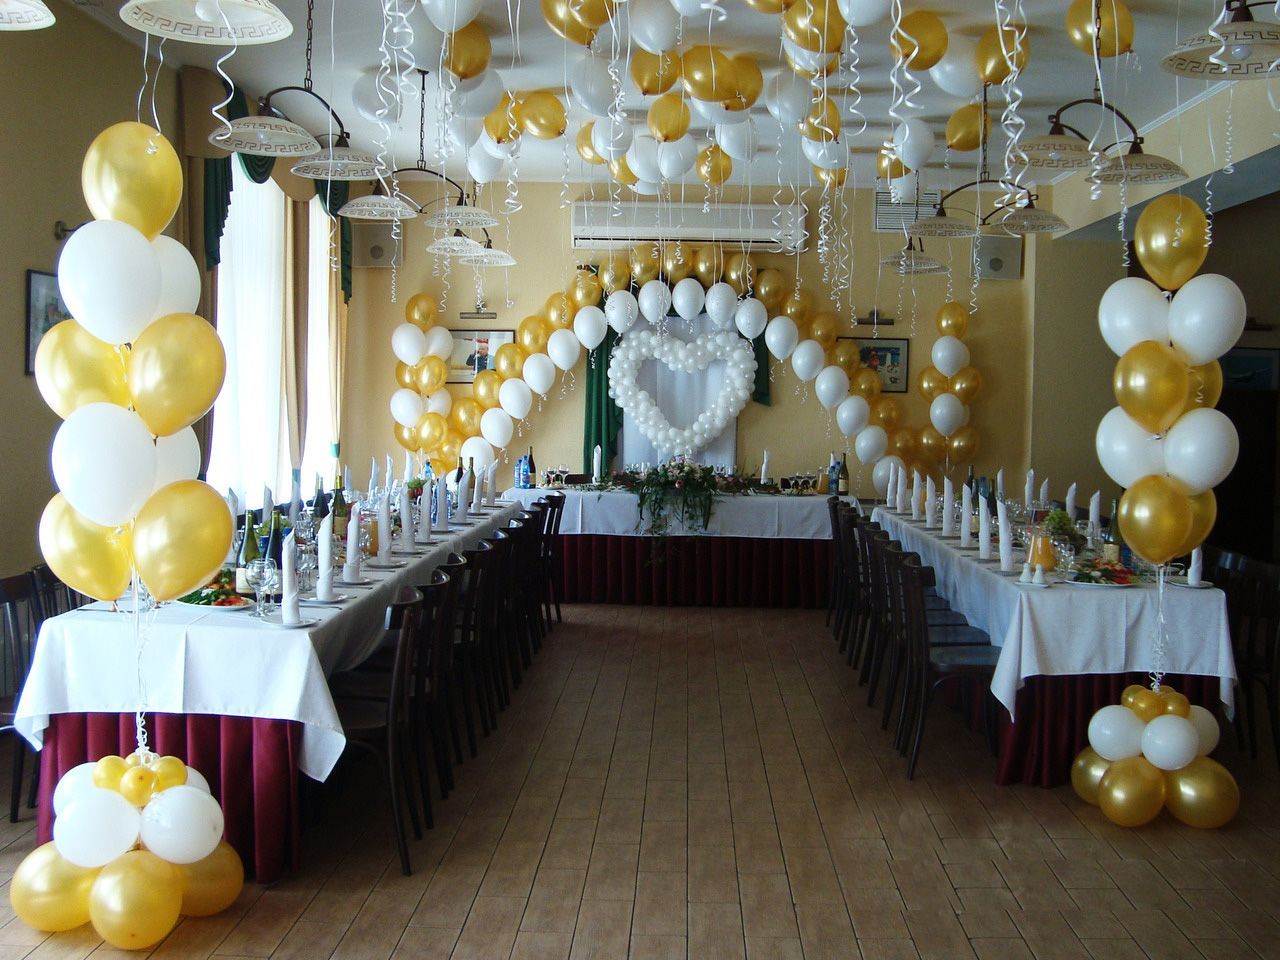 Как украсить зал на свадьбу шарами: оформление свадебного зала воздушными шариками своими руками